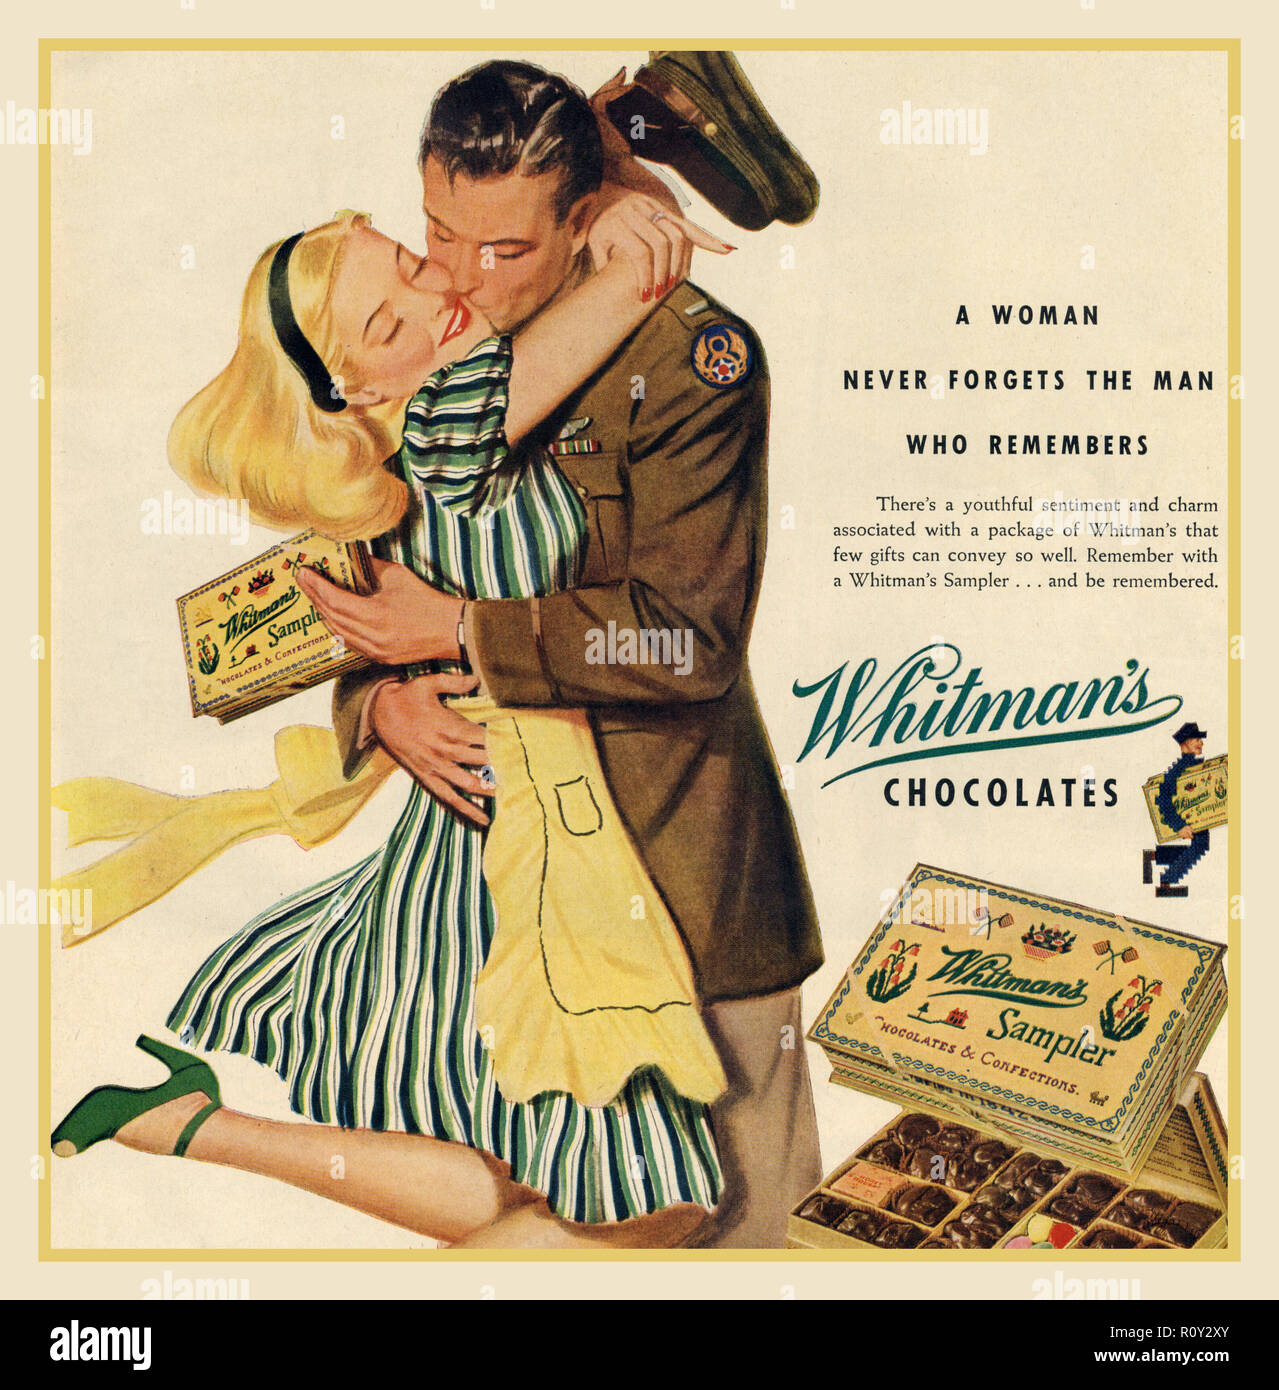 Vintage WW2 Chocolate annonce des années 1940 'le chocolat est un aliment de combat!' – Les barres de chocolat de la Seconde Guerre mondiale avec un militaire américain rentrant chez lui à partir de WW2 avec une boîte de chocolats Whitman « Une femme ne oublie jamais un homme qui se souvient » des États-Unis Banque D'Images